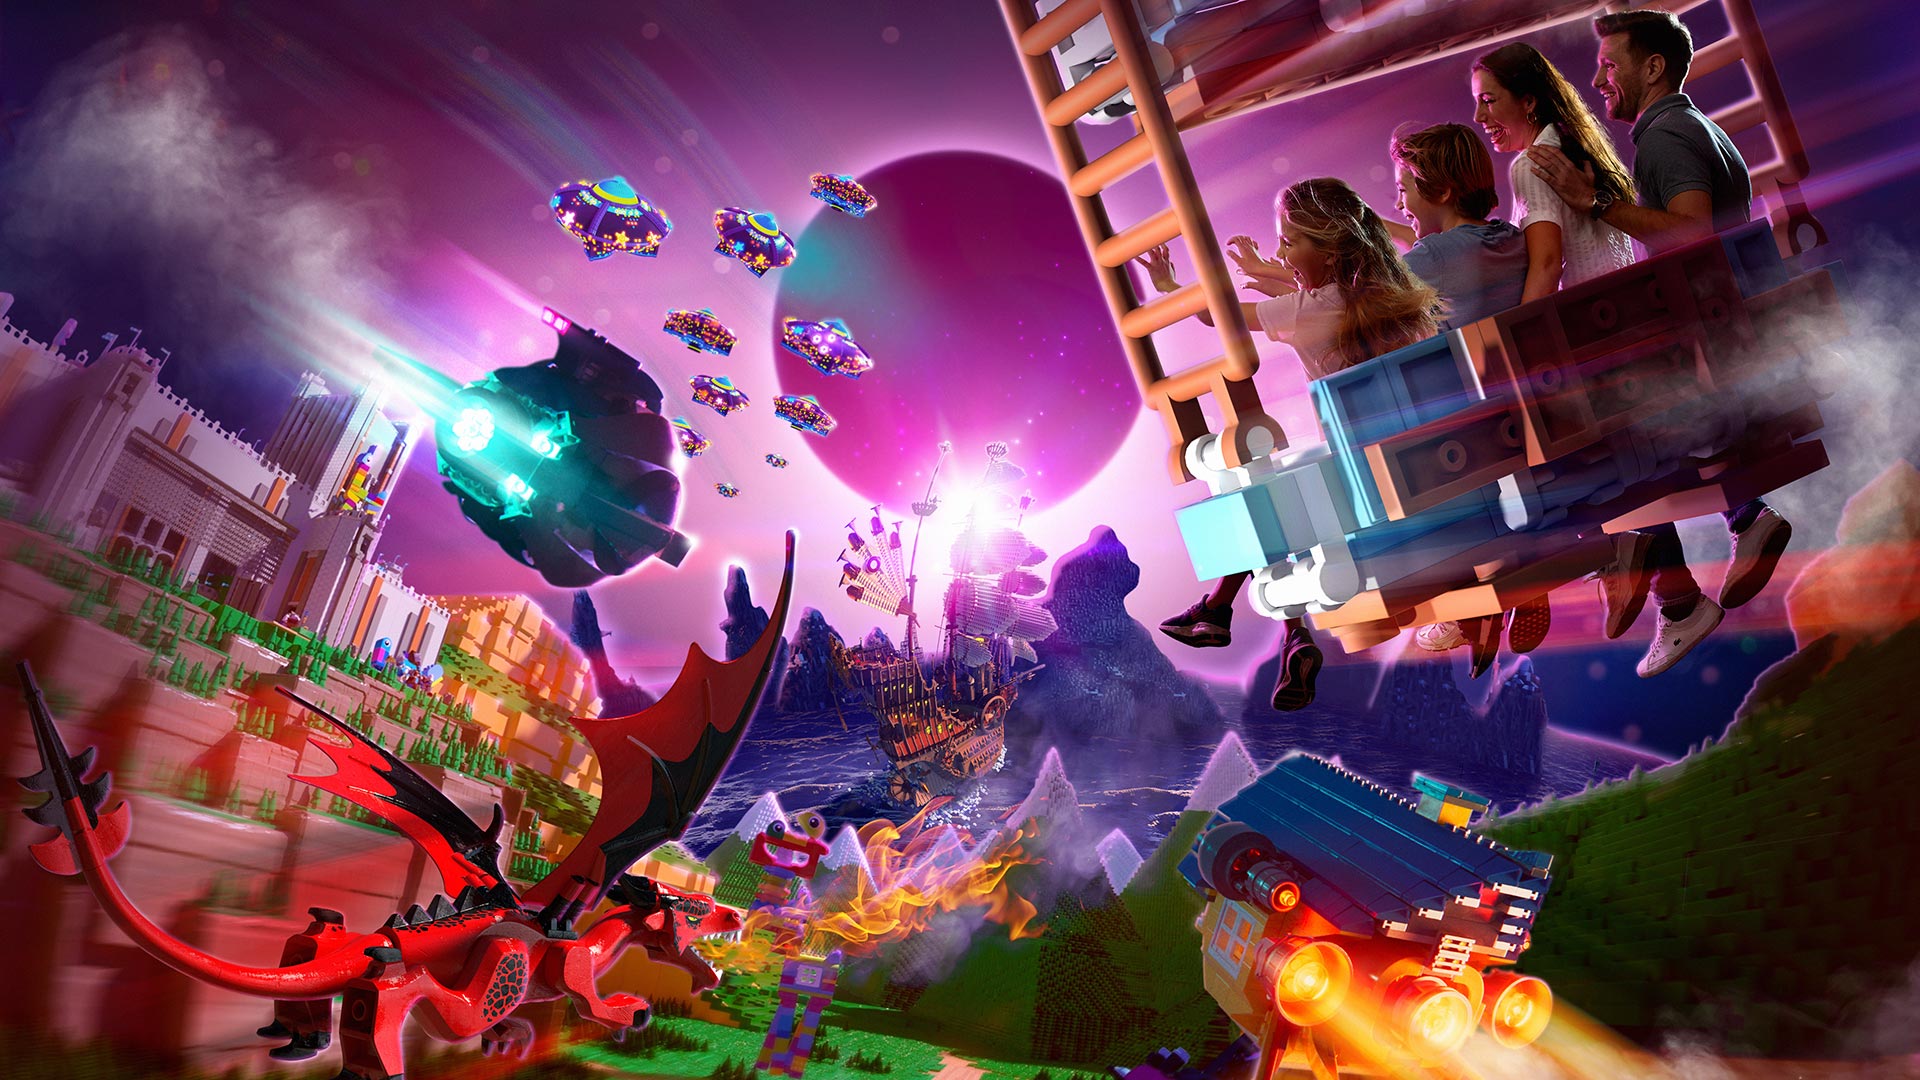 skyld opbevaring Akvarium THE LEGO® MOVIE™ World in LEGOLAND®